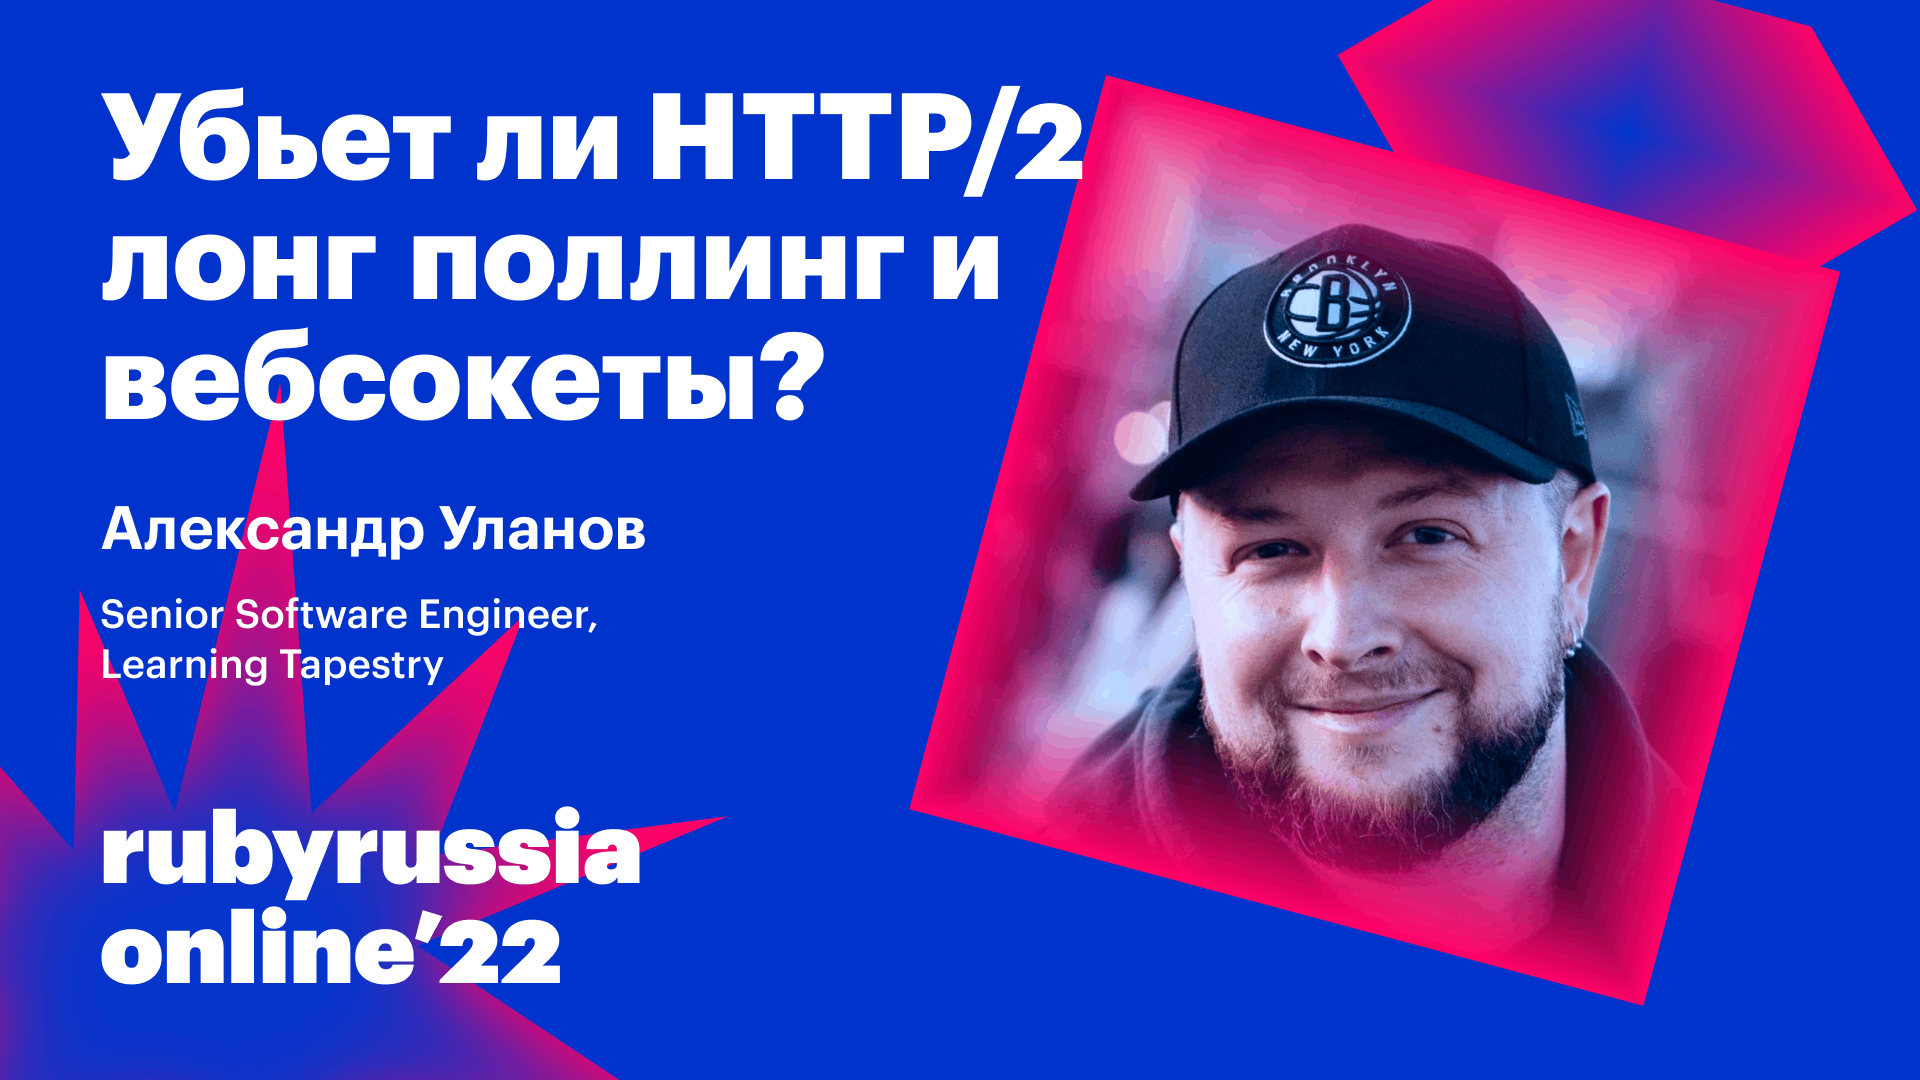 Убьет ли HTTP/2 лонг поллинг и вебсокеты?